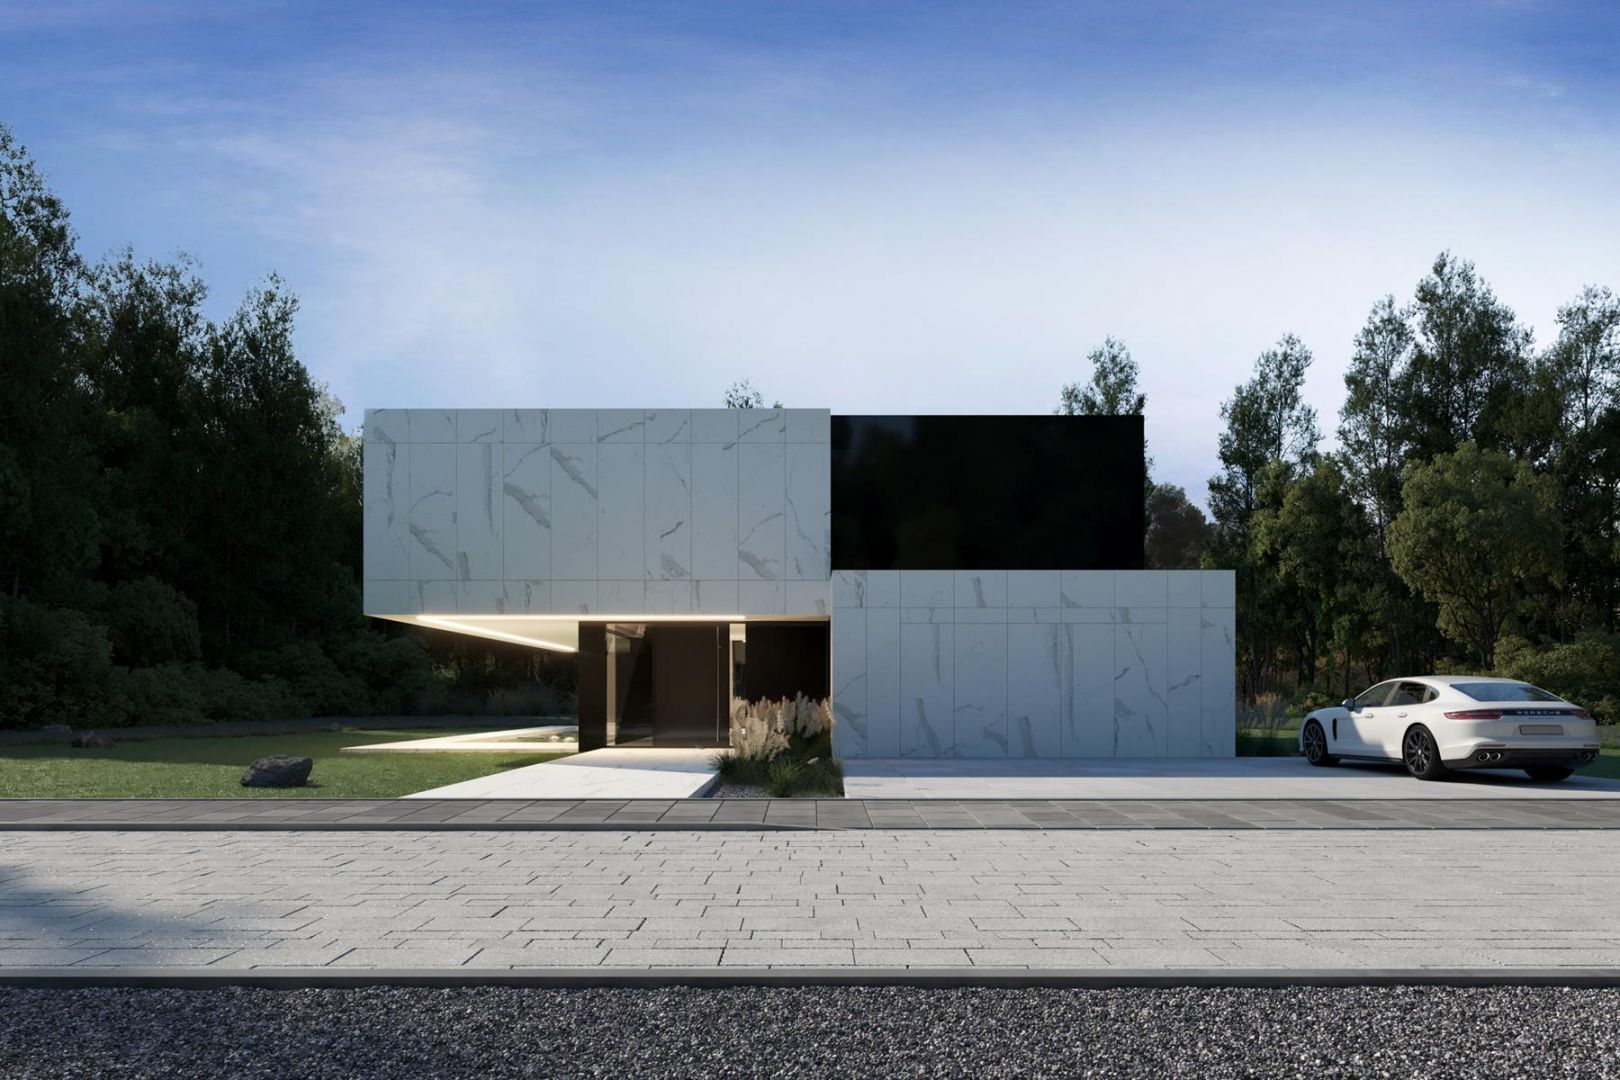 RE: LEVITANTE HOUSE - nowy projekt nowoczesnego domu  stworzyła Marcin Tomaszewski z pracowni Reform Architekt. Fot. mat. prasowe Reform Architekt